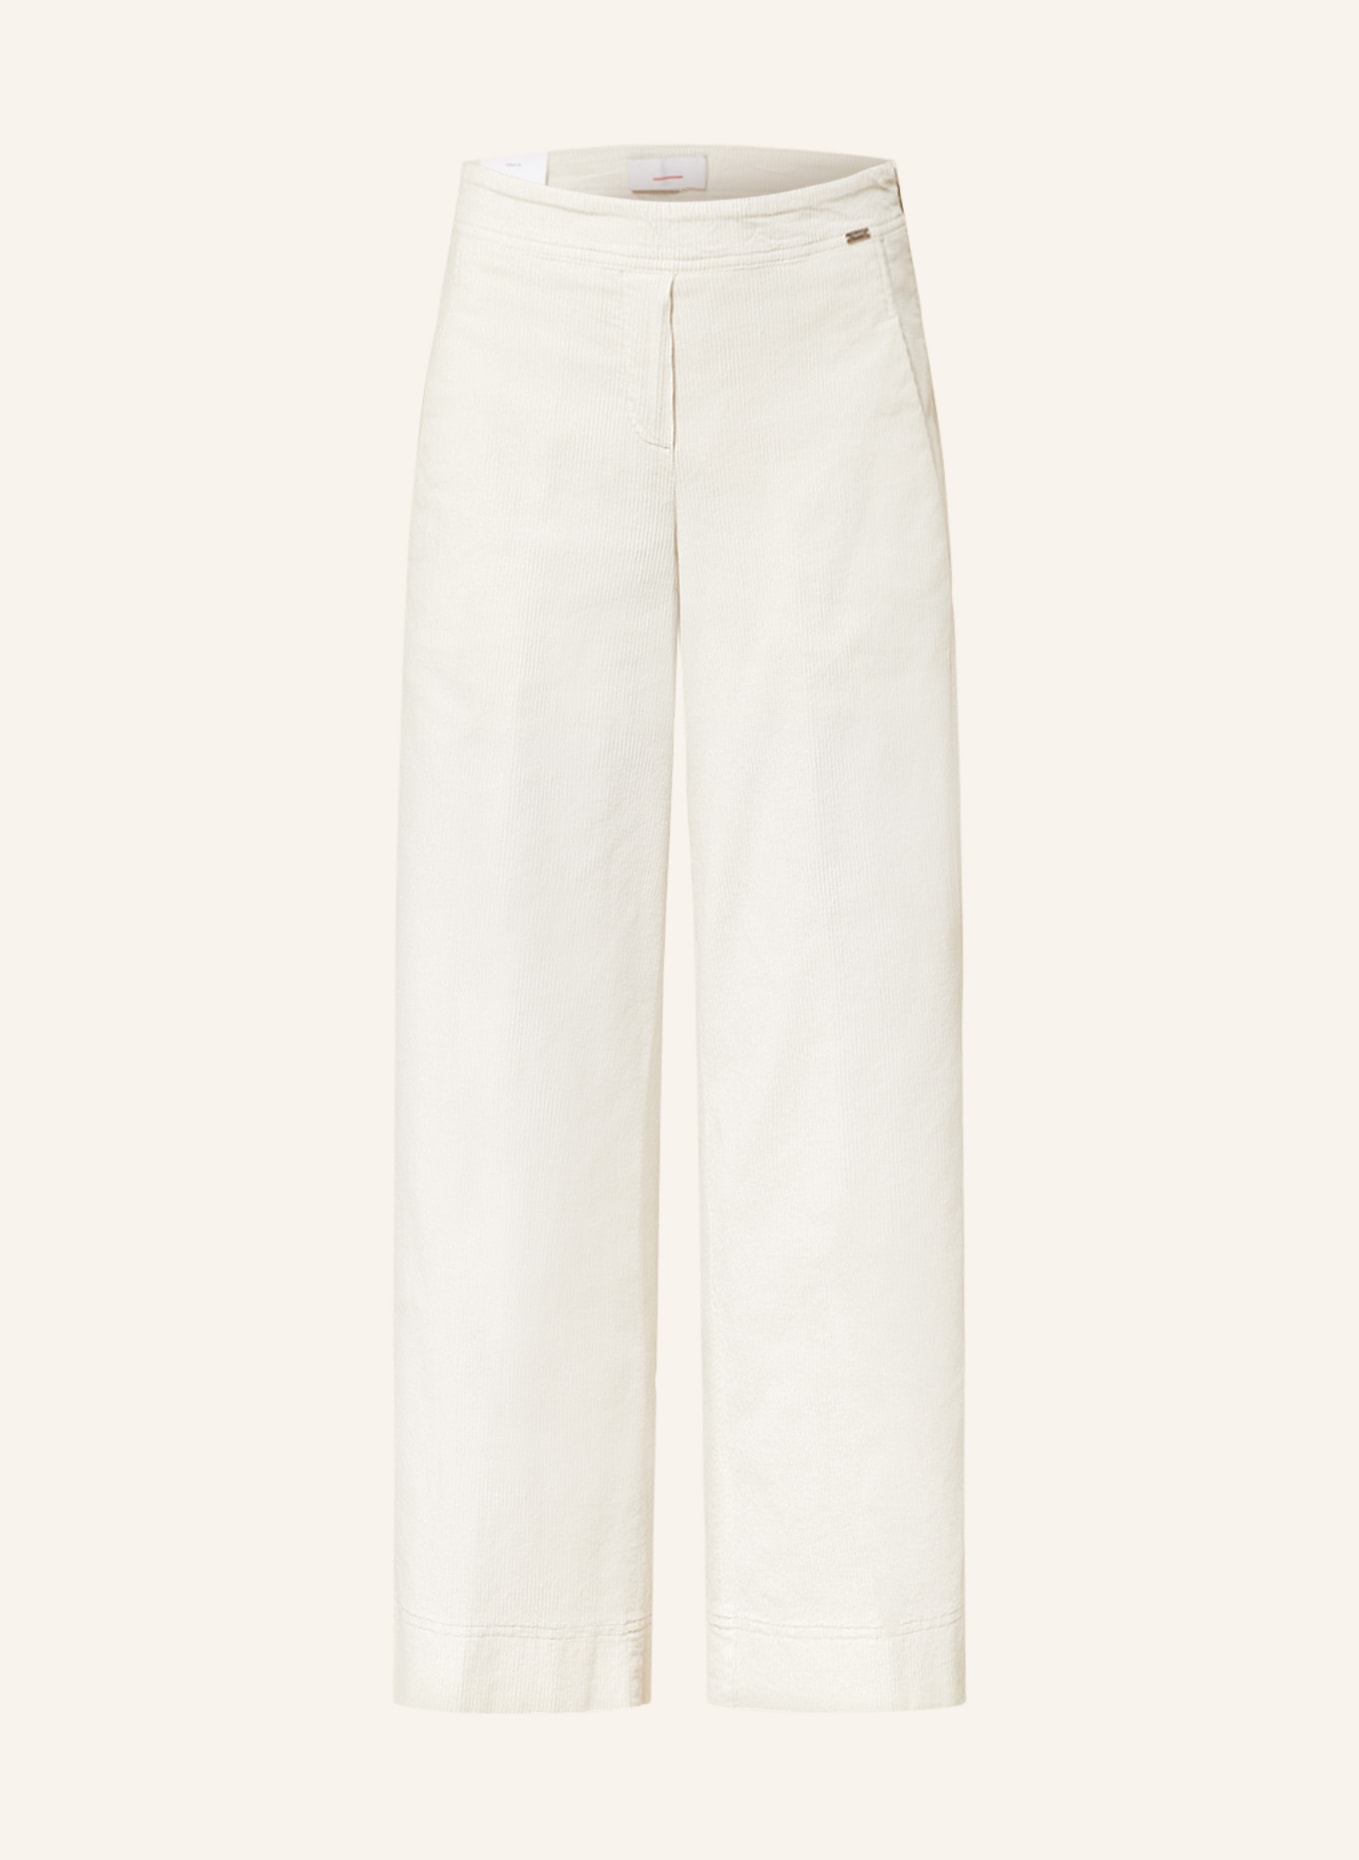 CINQUE 7/8 trousers CIHAWAII in corduroy, Color: ECRU (Image 1)